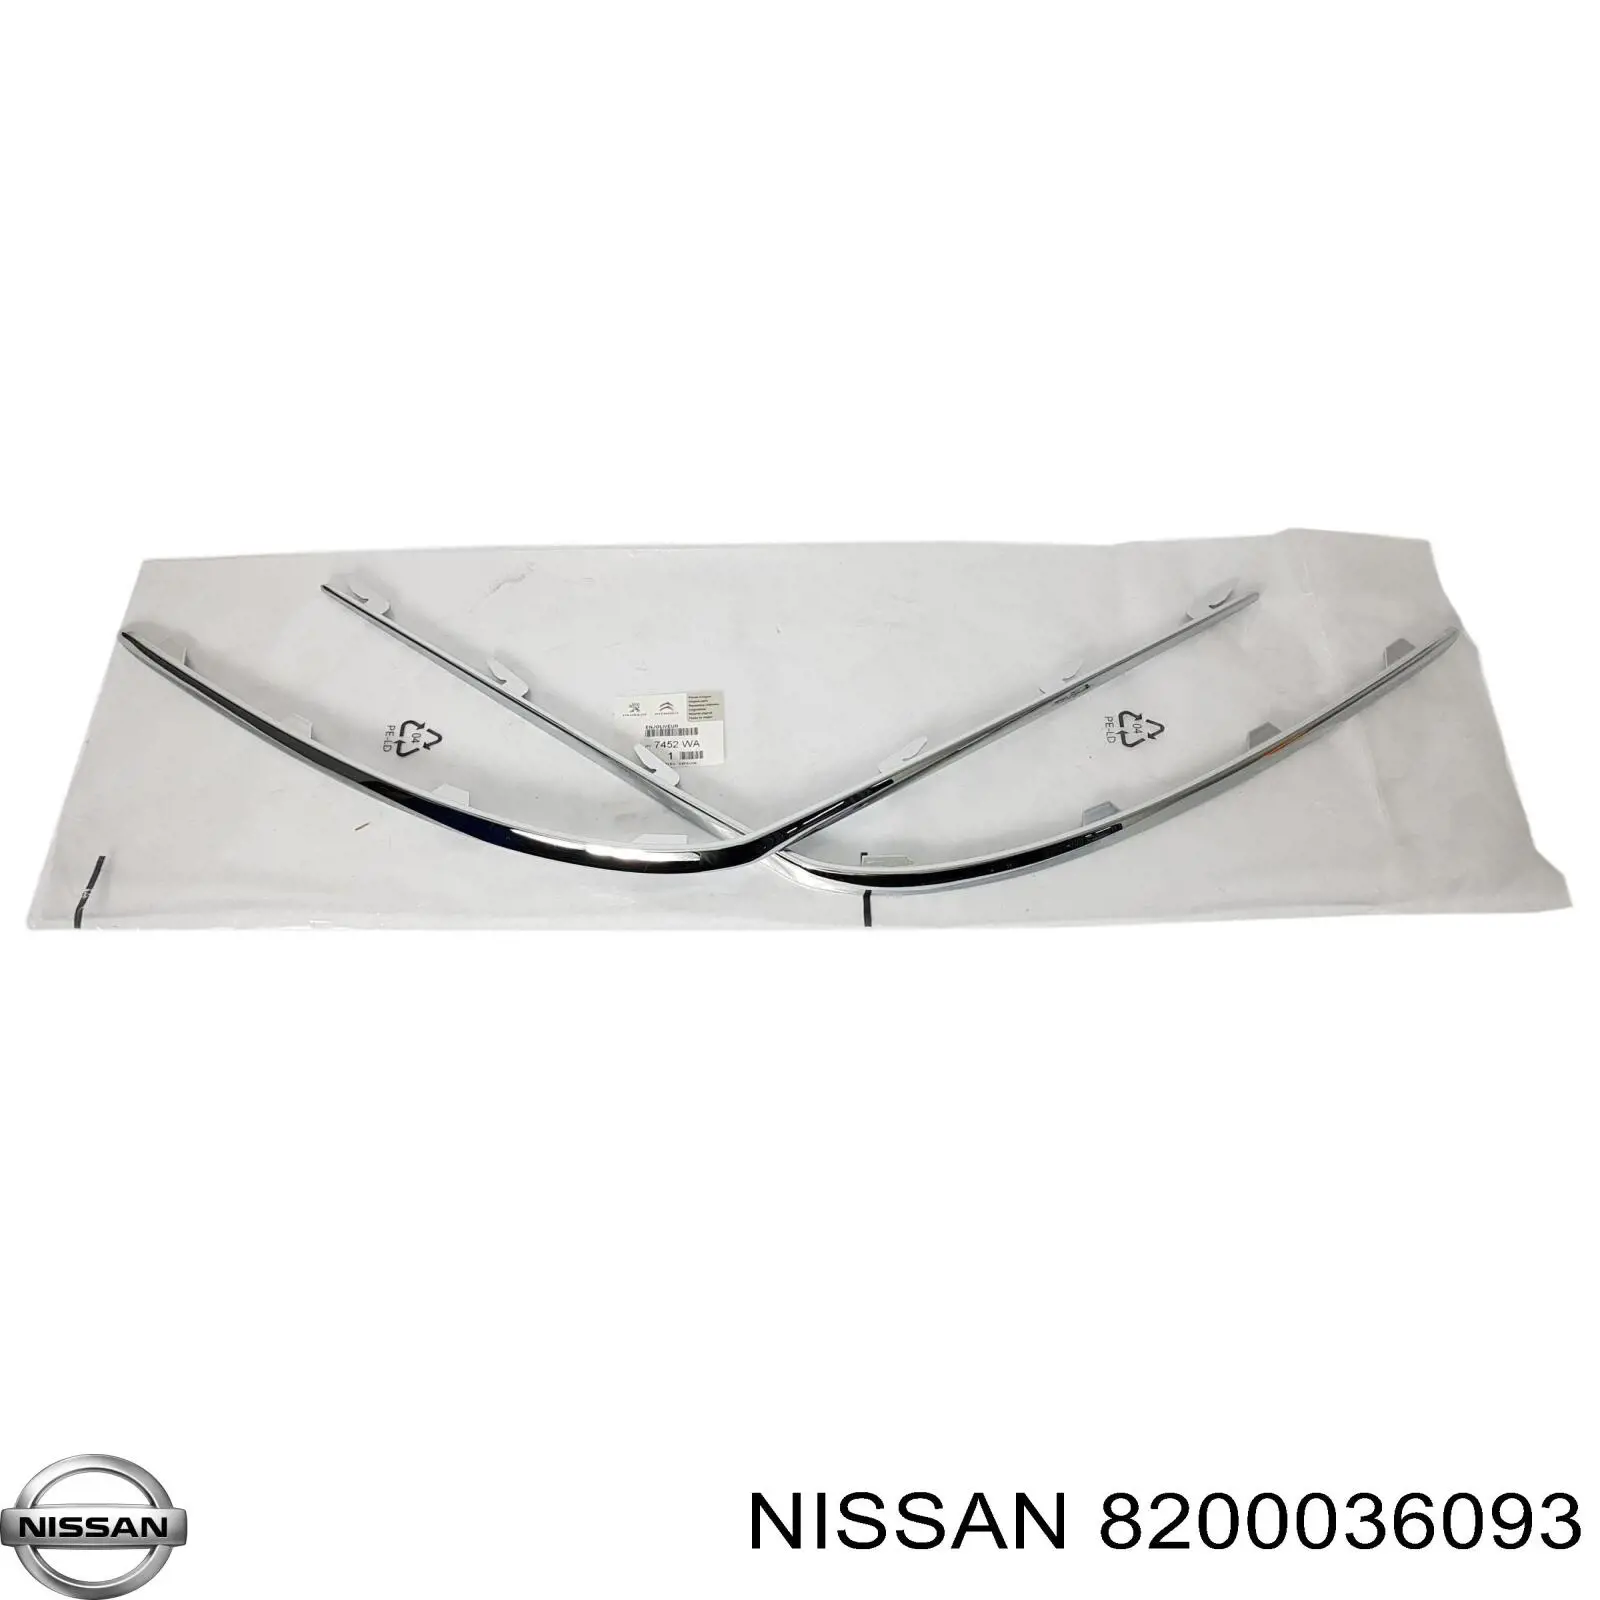 8200036093 Nissan listón embellecedor/protector, guardabarros trasero izquierdo